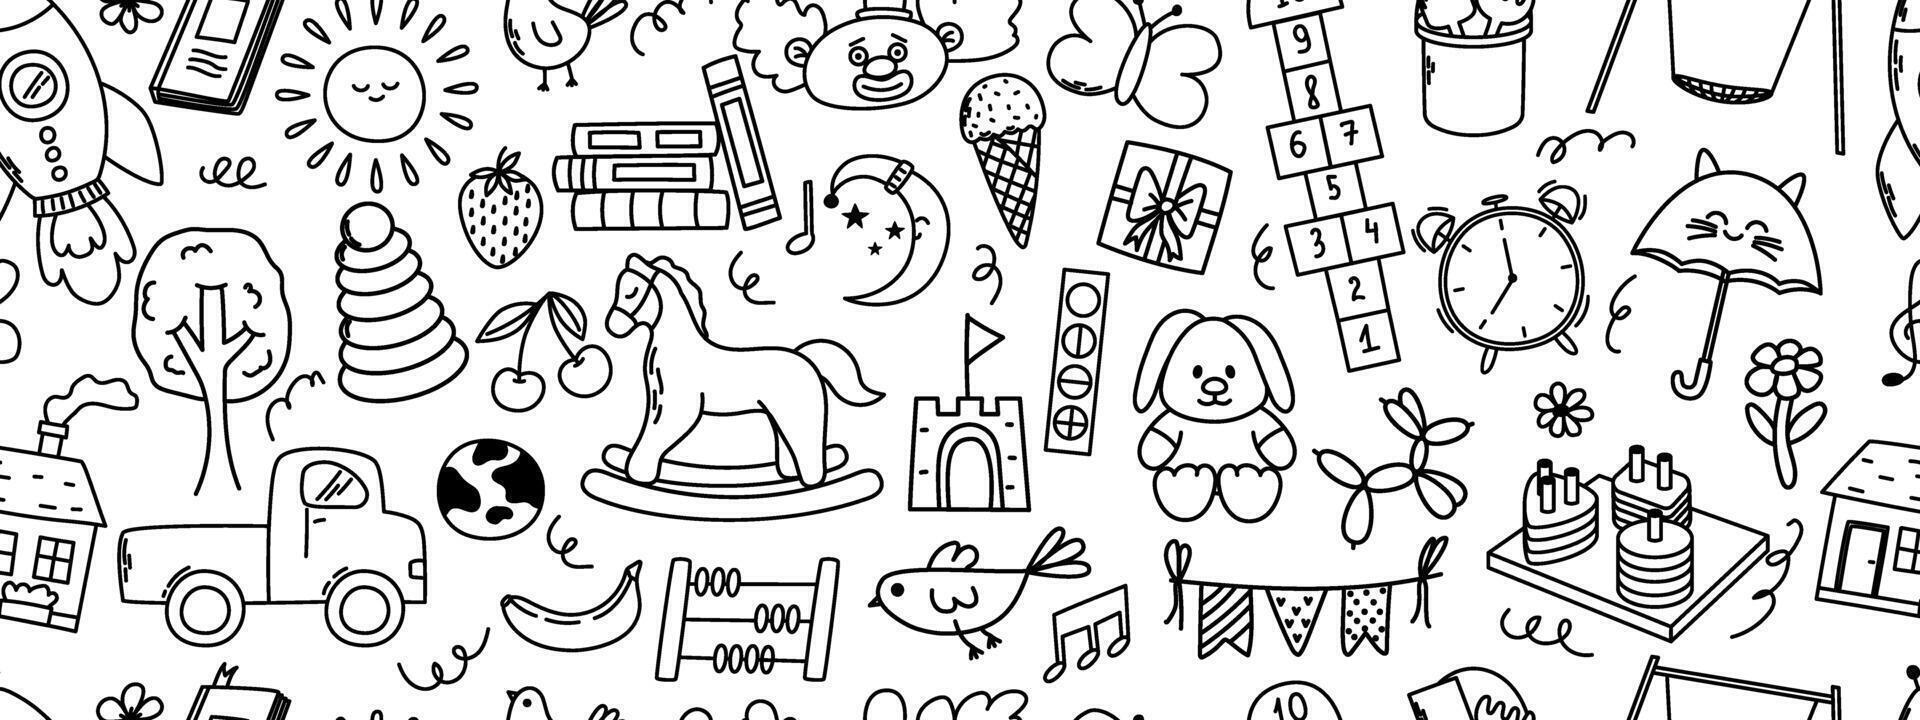 naadloos patroon met kinderopvang tekening elementen. raket, hinkelen, speelgoed, paard, huis, zon en andere elementen. vector